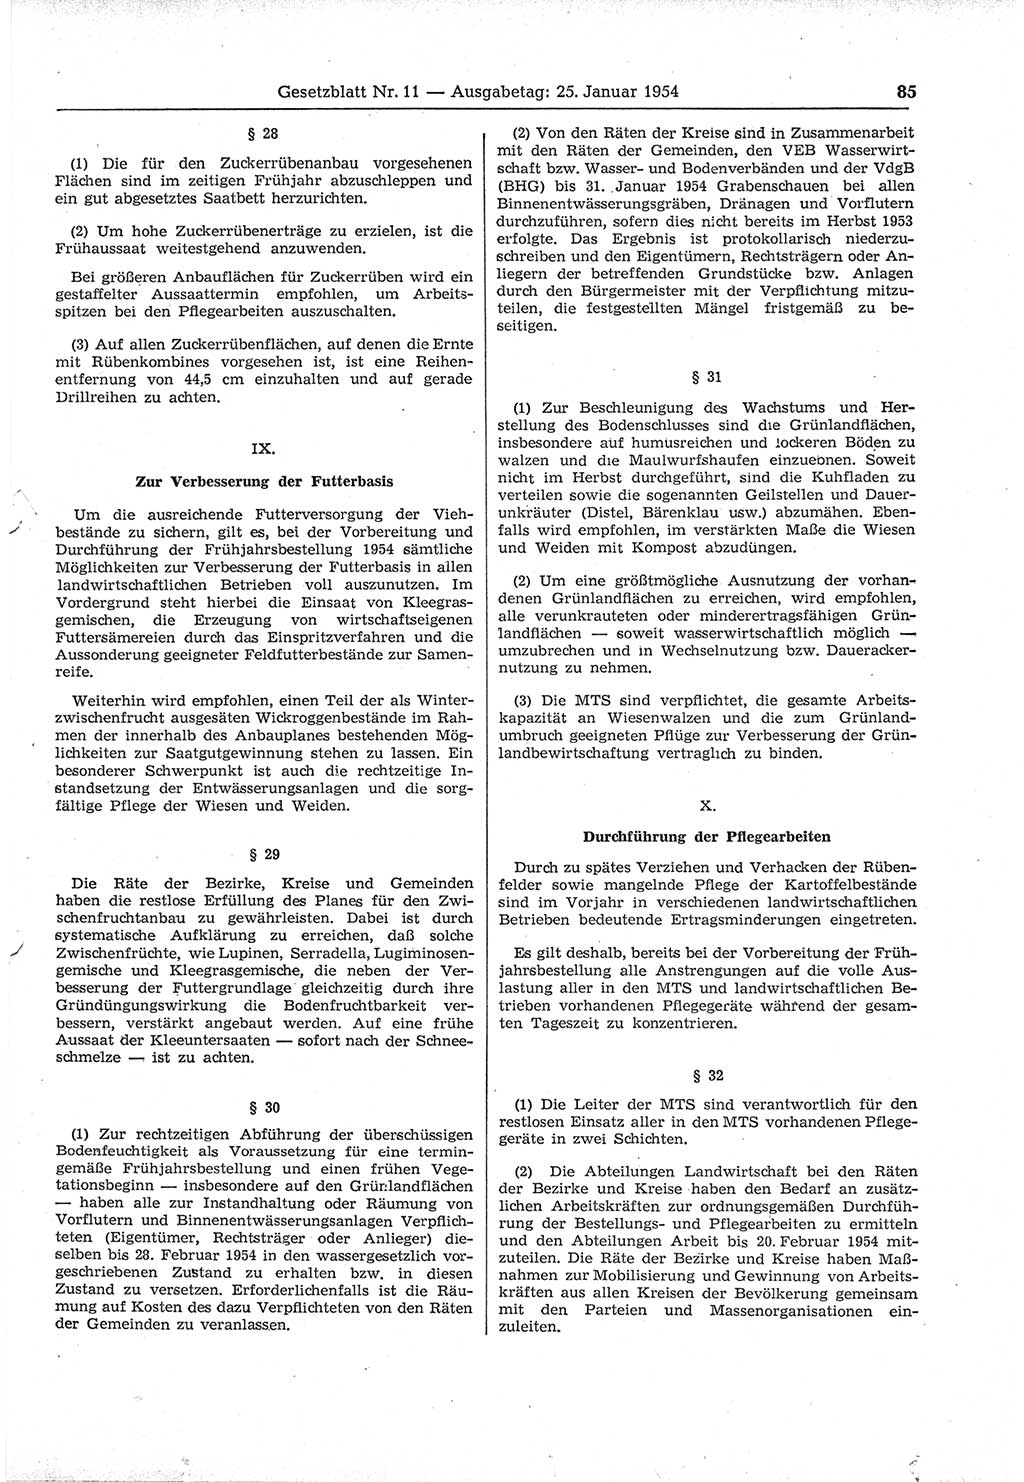 Gesetzblatt (GBl.) der Deutschen Demokratischen Republik (DDR) 1954, Seite 85 (GBl. DDR 1954, S. 85)